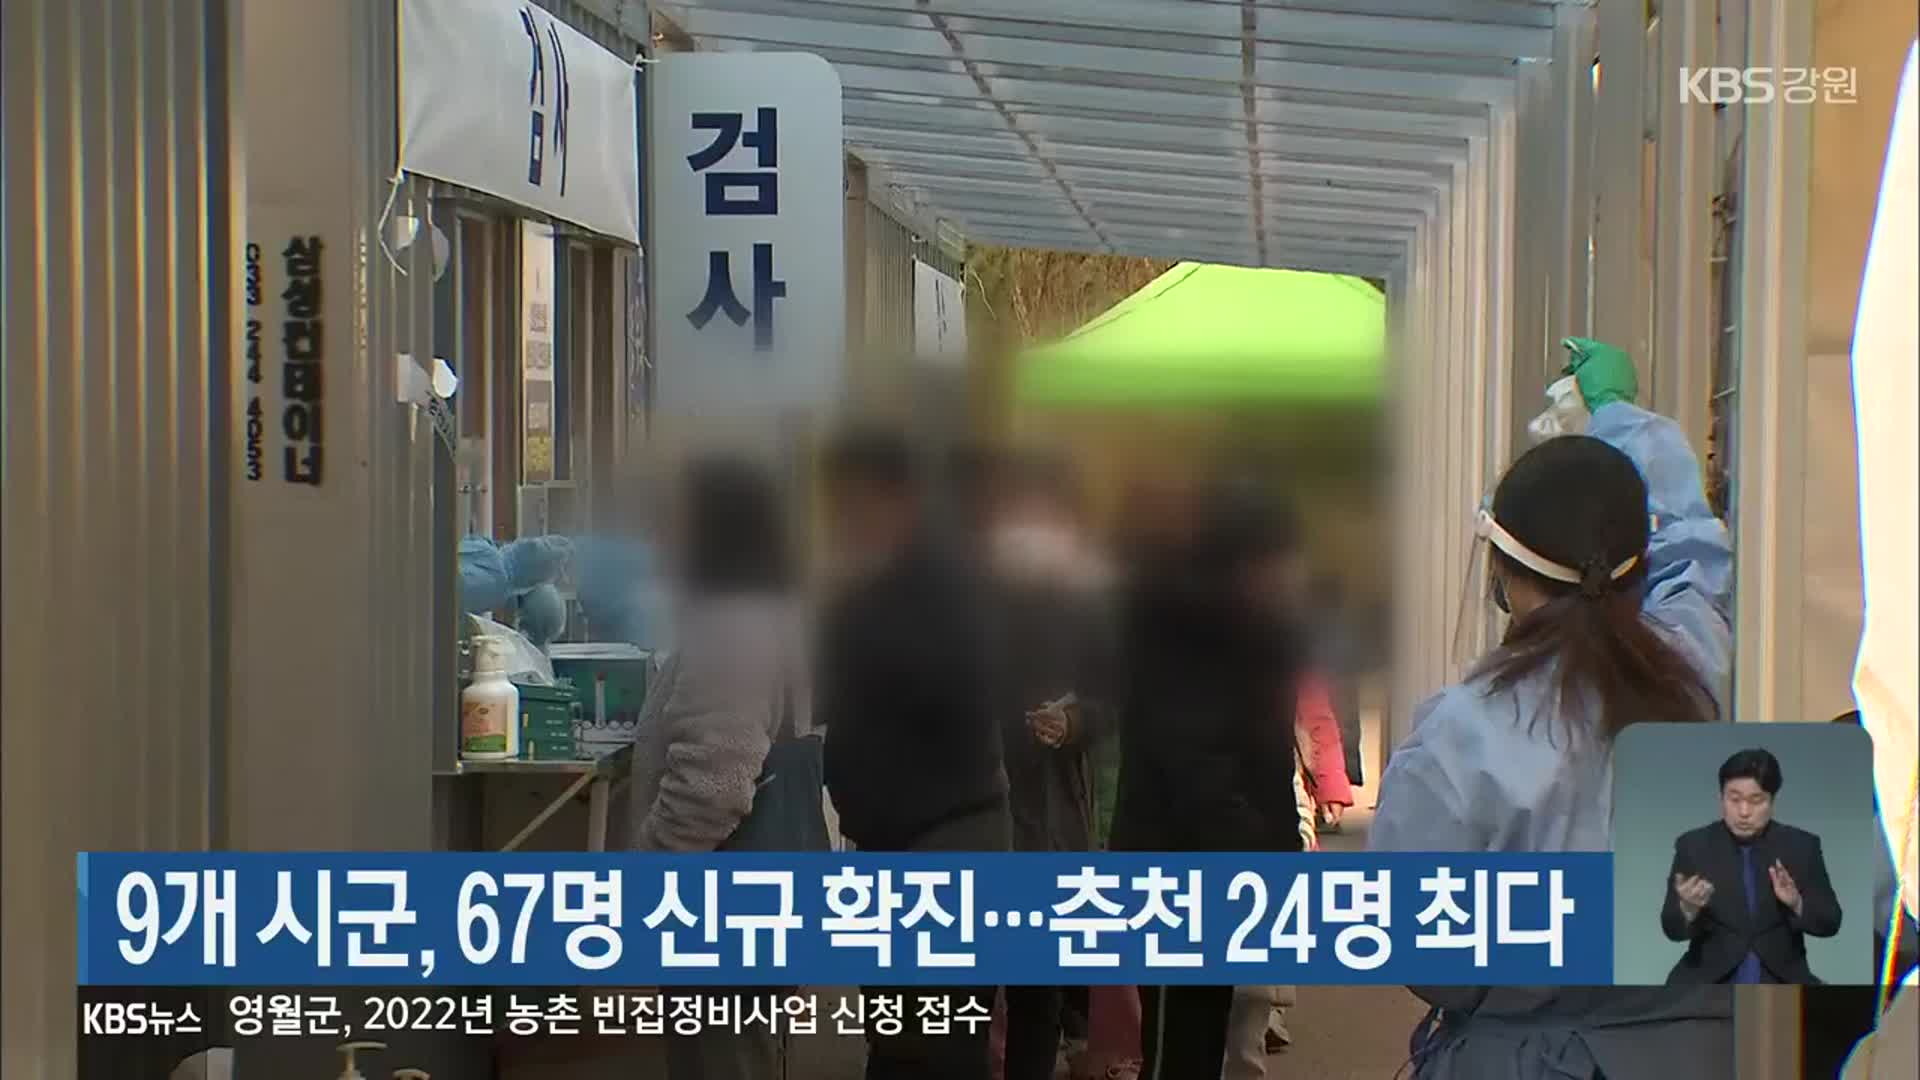 강원 9개 시군, 67명 신규 확진…춘천 24명 최다